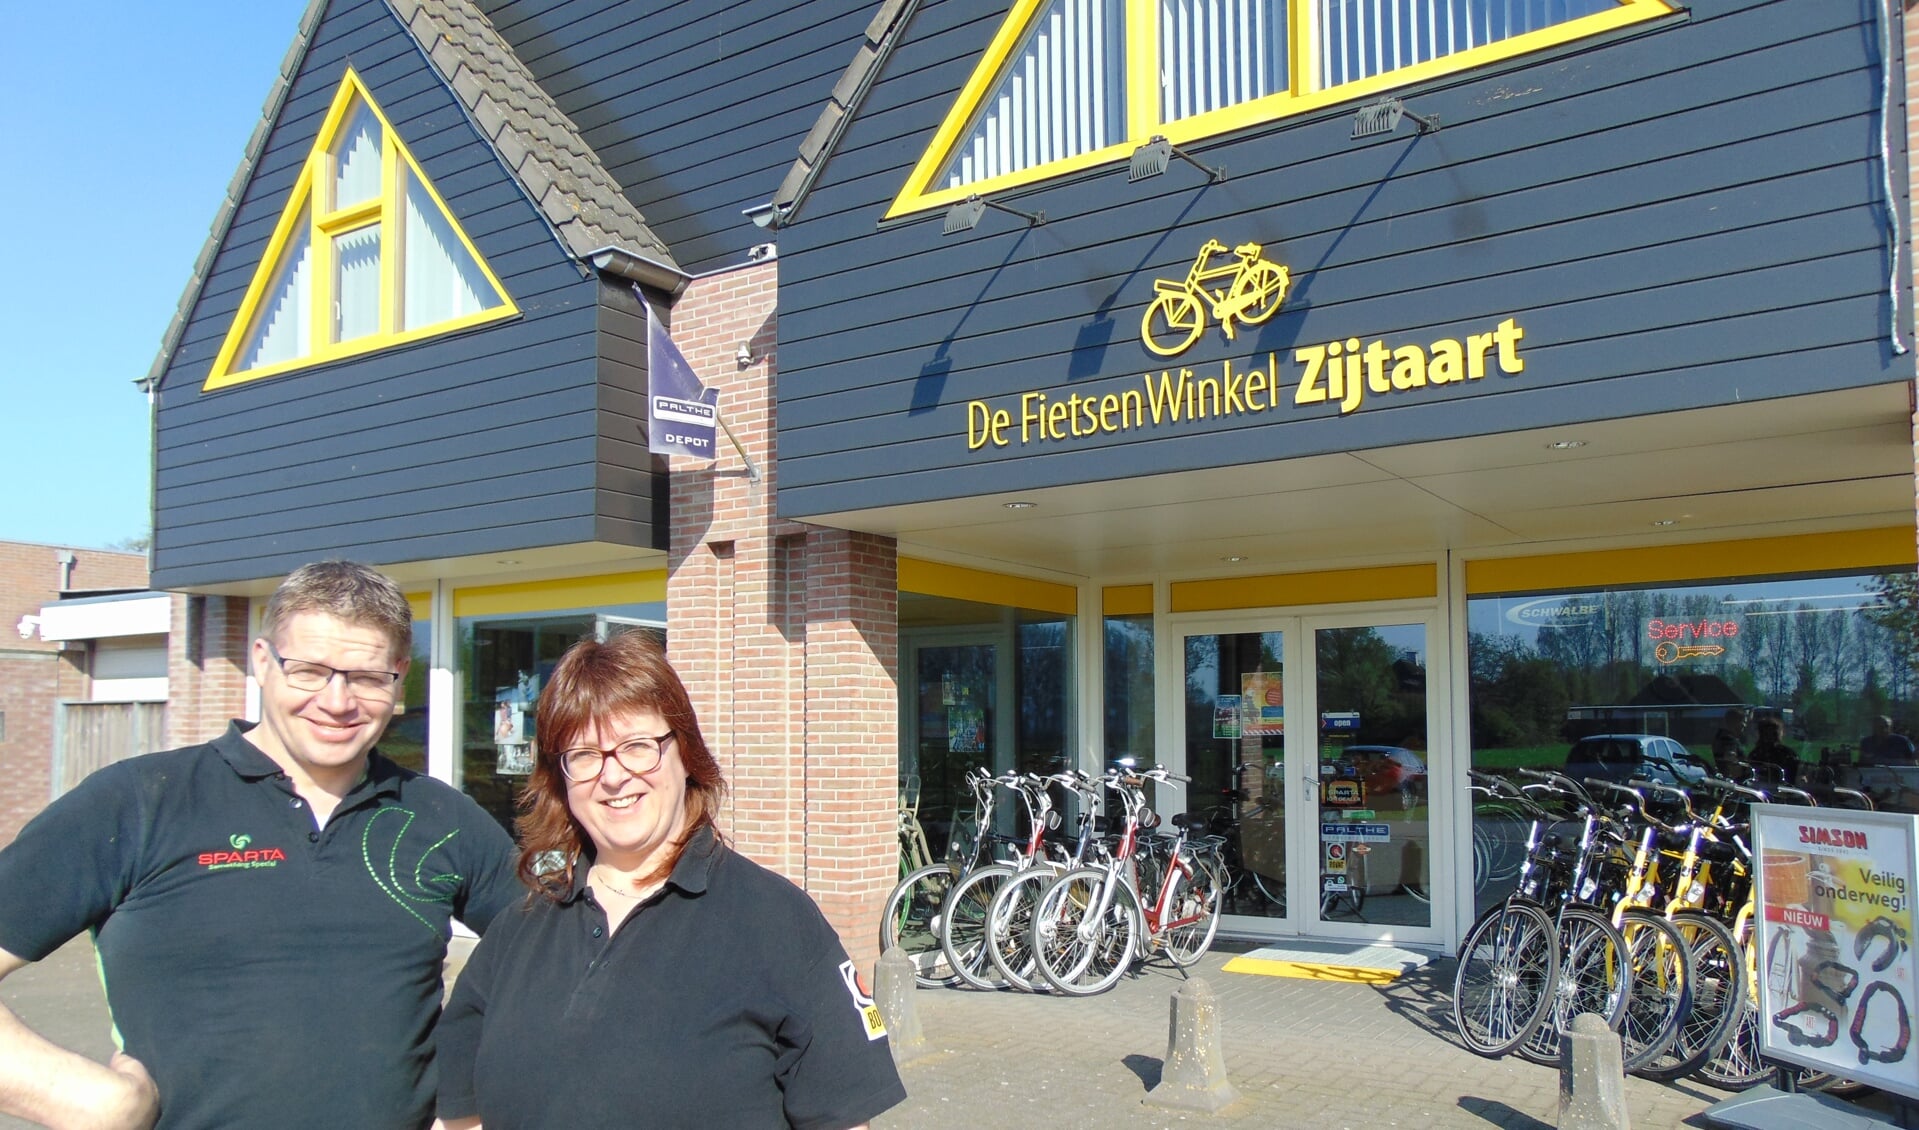 Service staat voorop bij Peter en Mirjan van De FietsenWinkel Zijtaart.